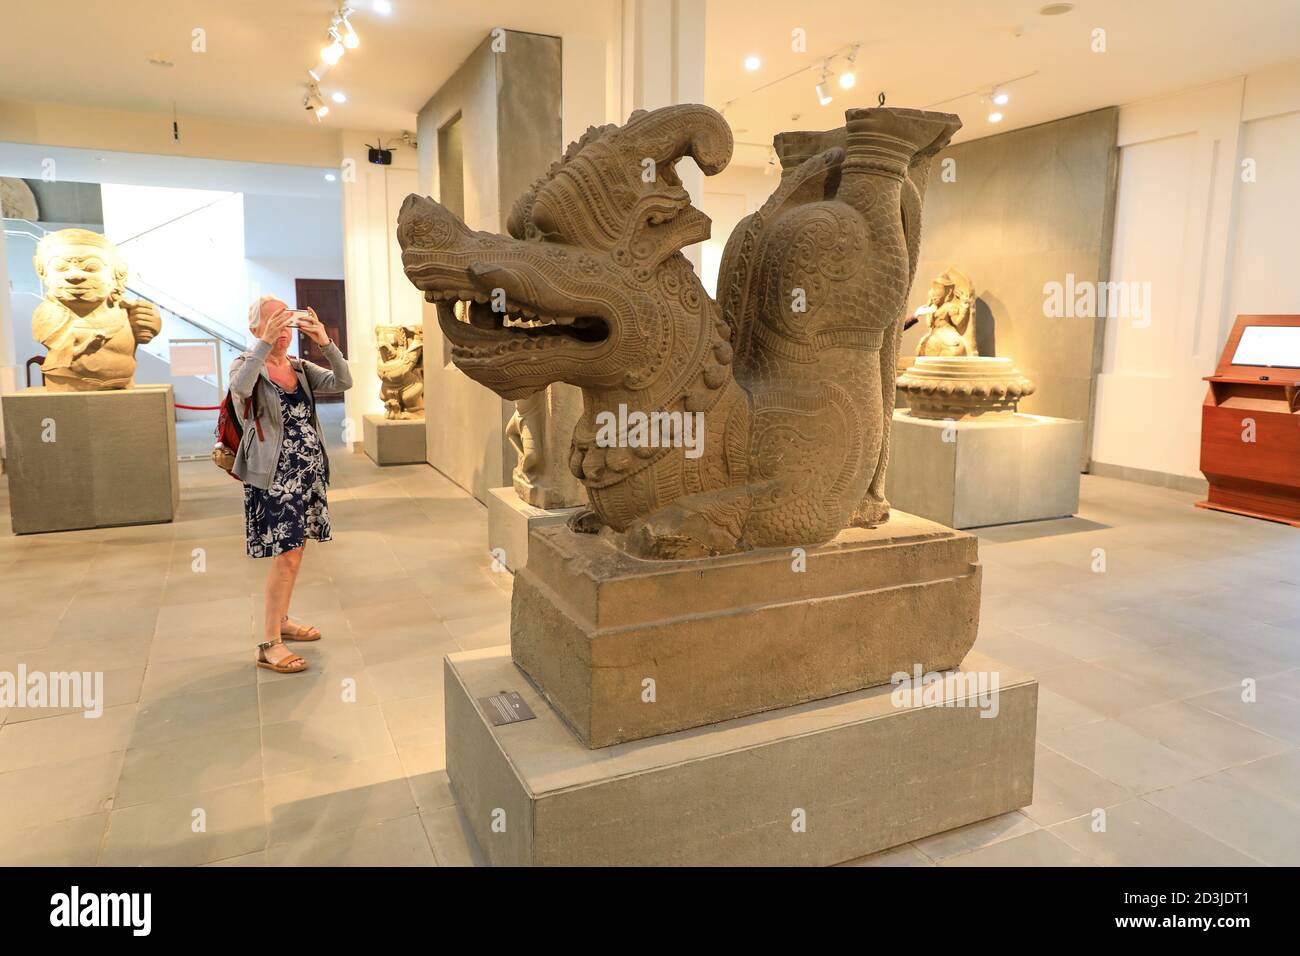 Una donna che scattava una foto di una scultura di un Rong o di un drago al Museo della scultura di Cham, Danang, Vietnam, Asia Foto Stock